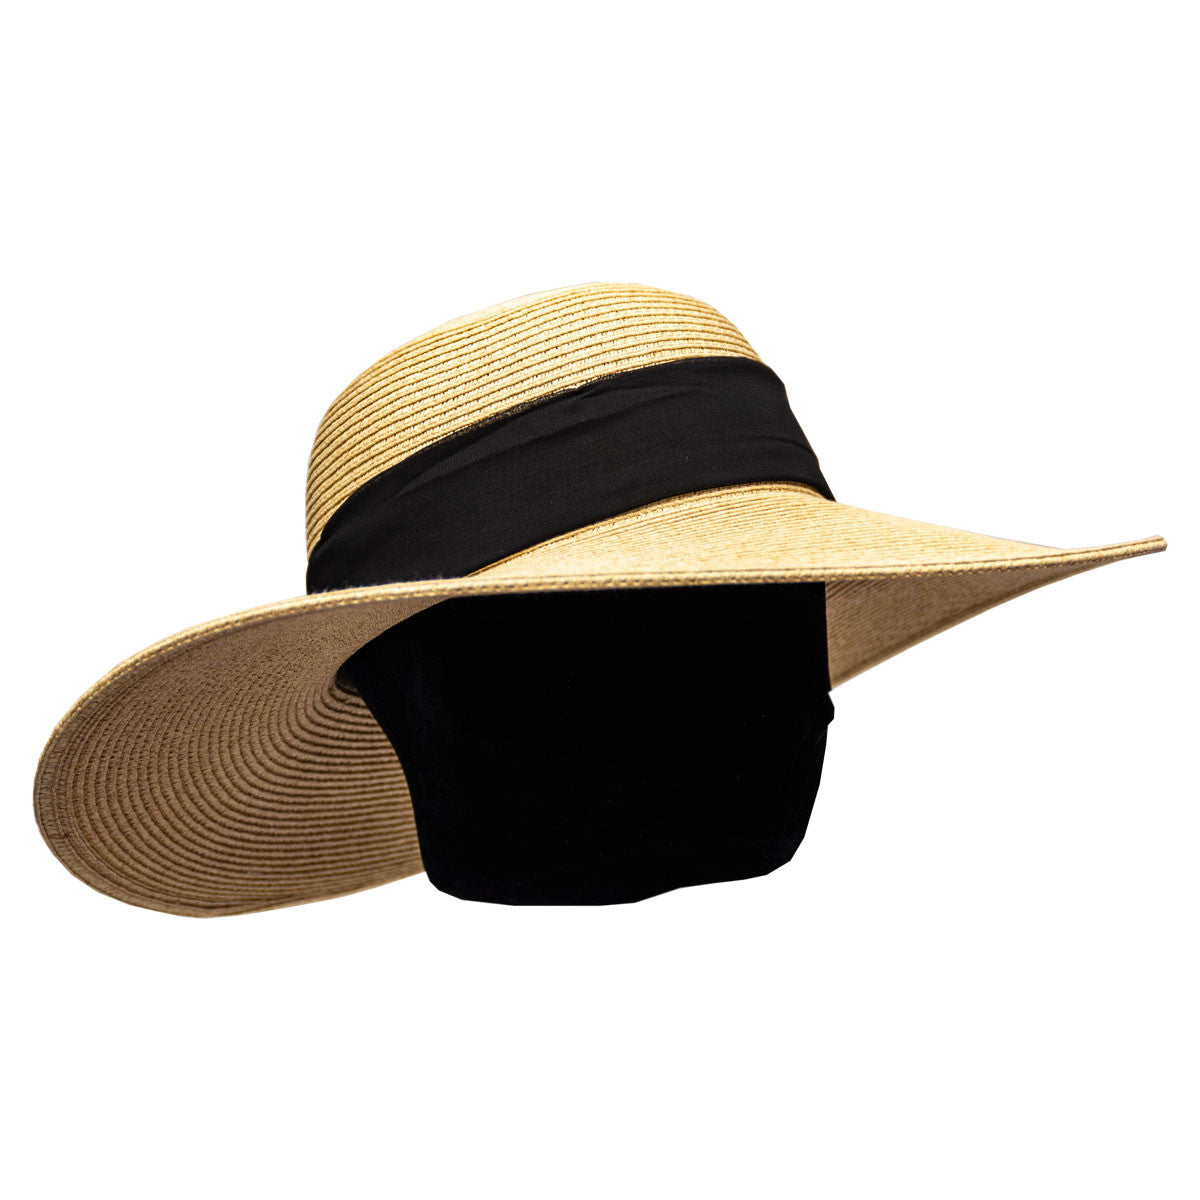 Saint Martin, 4.5 Brim Sun Hat